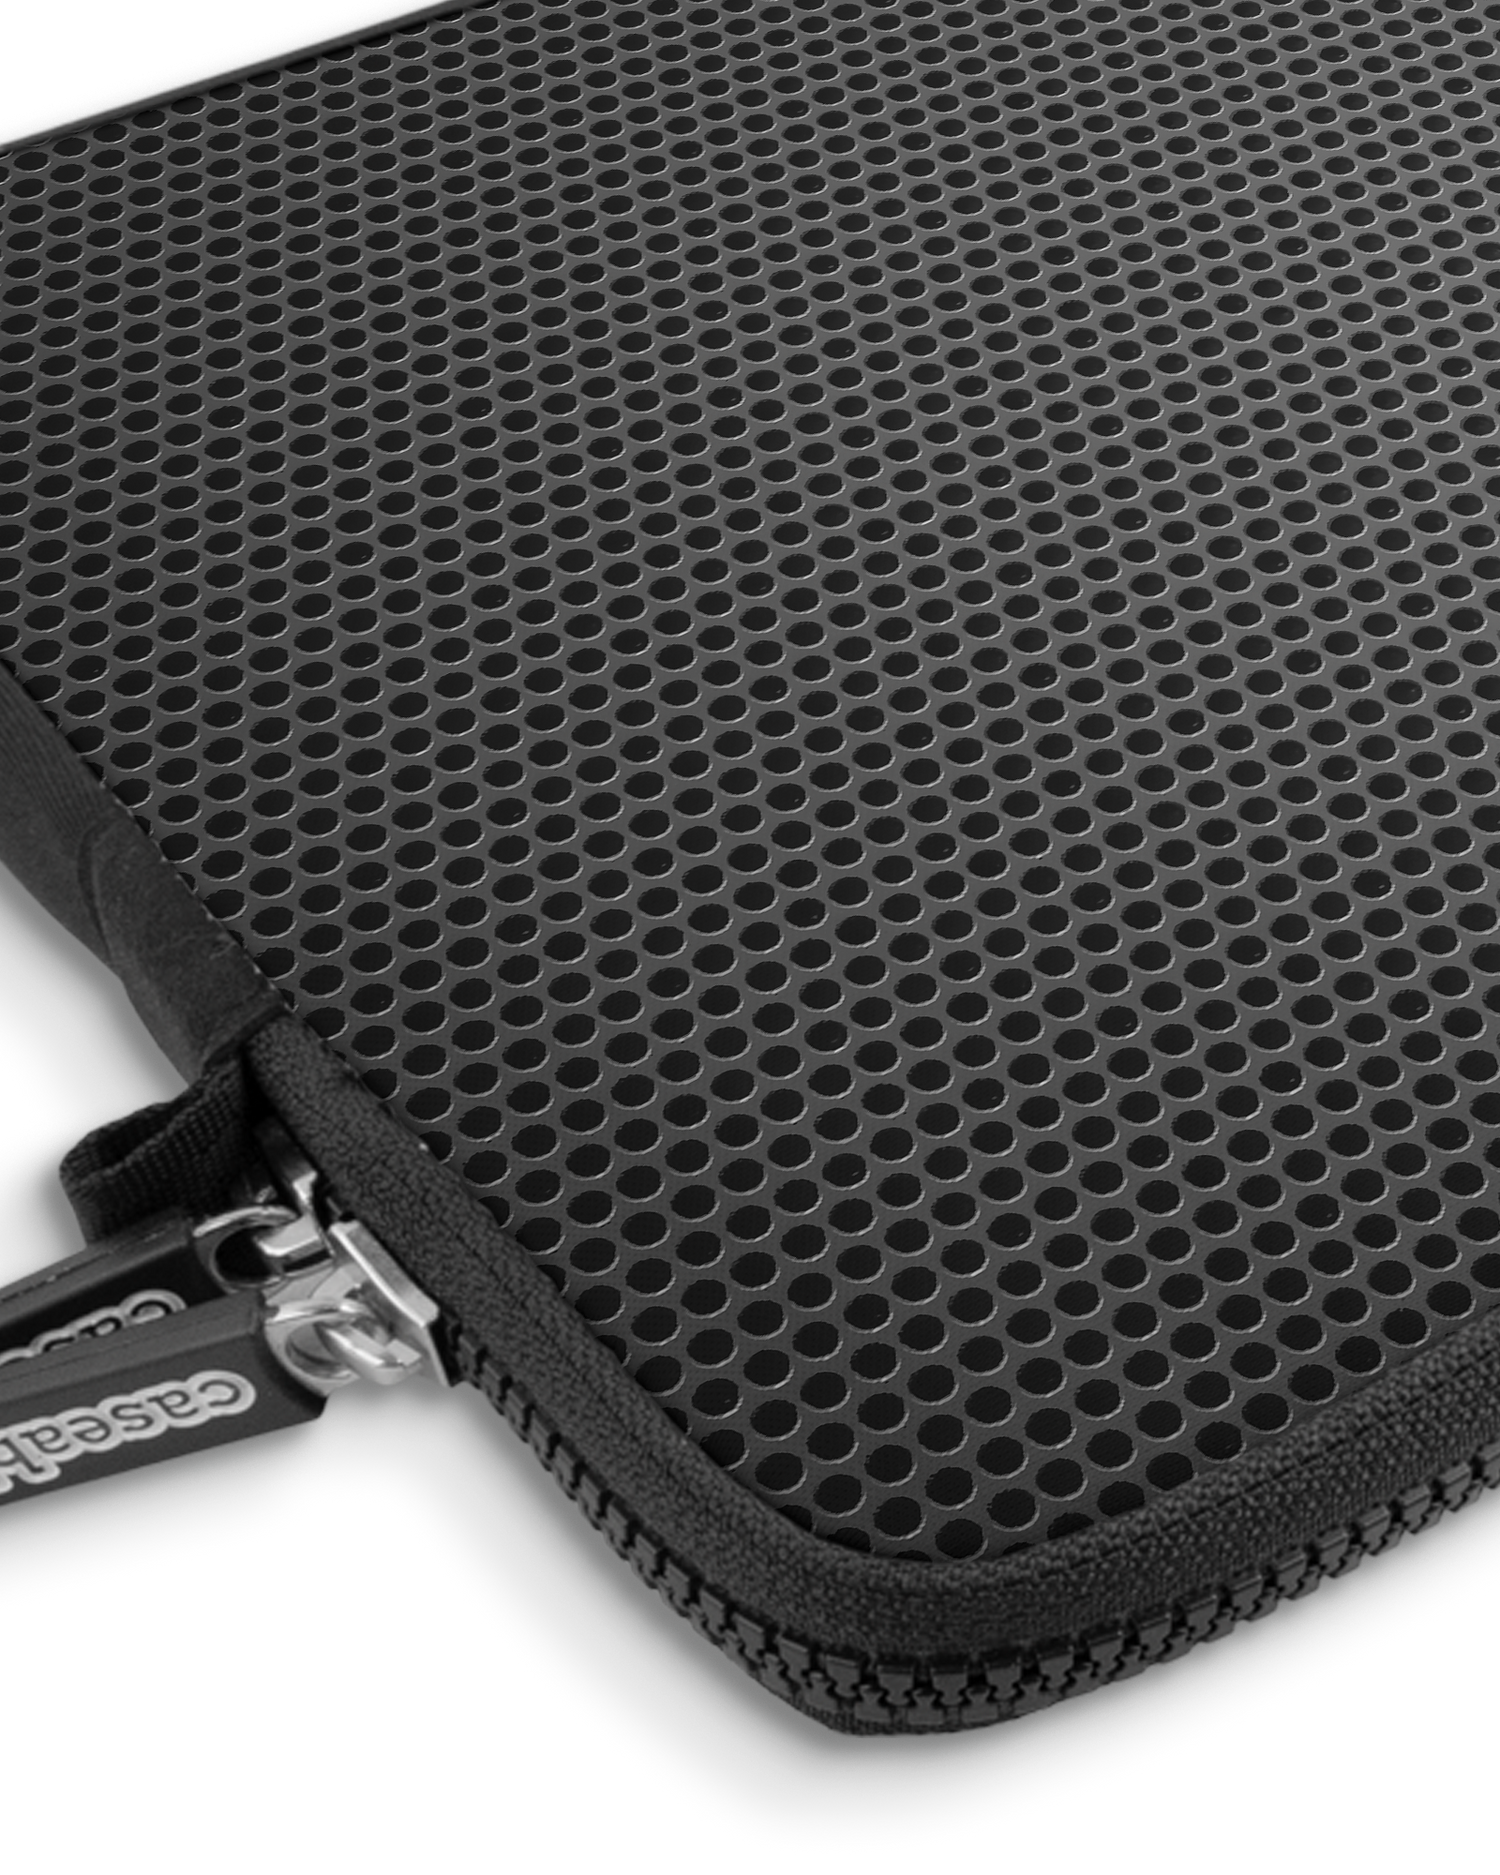 Carbon II Premium Laptoptasche 13 Zoll mit Gerät im Inneren